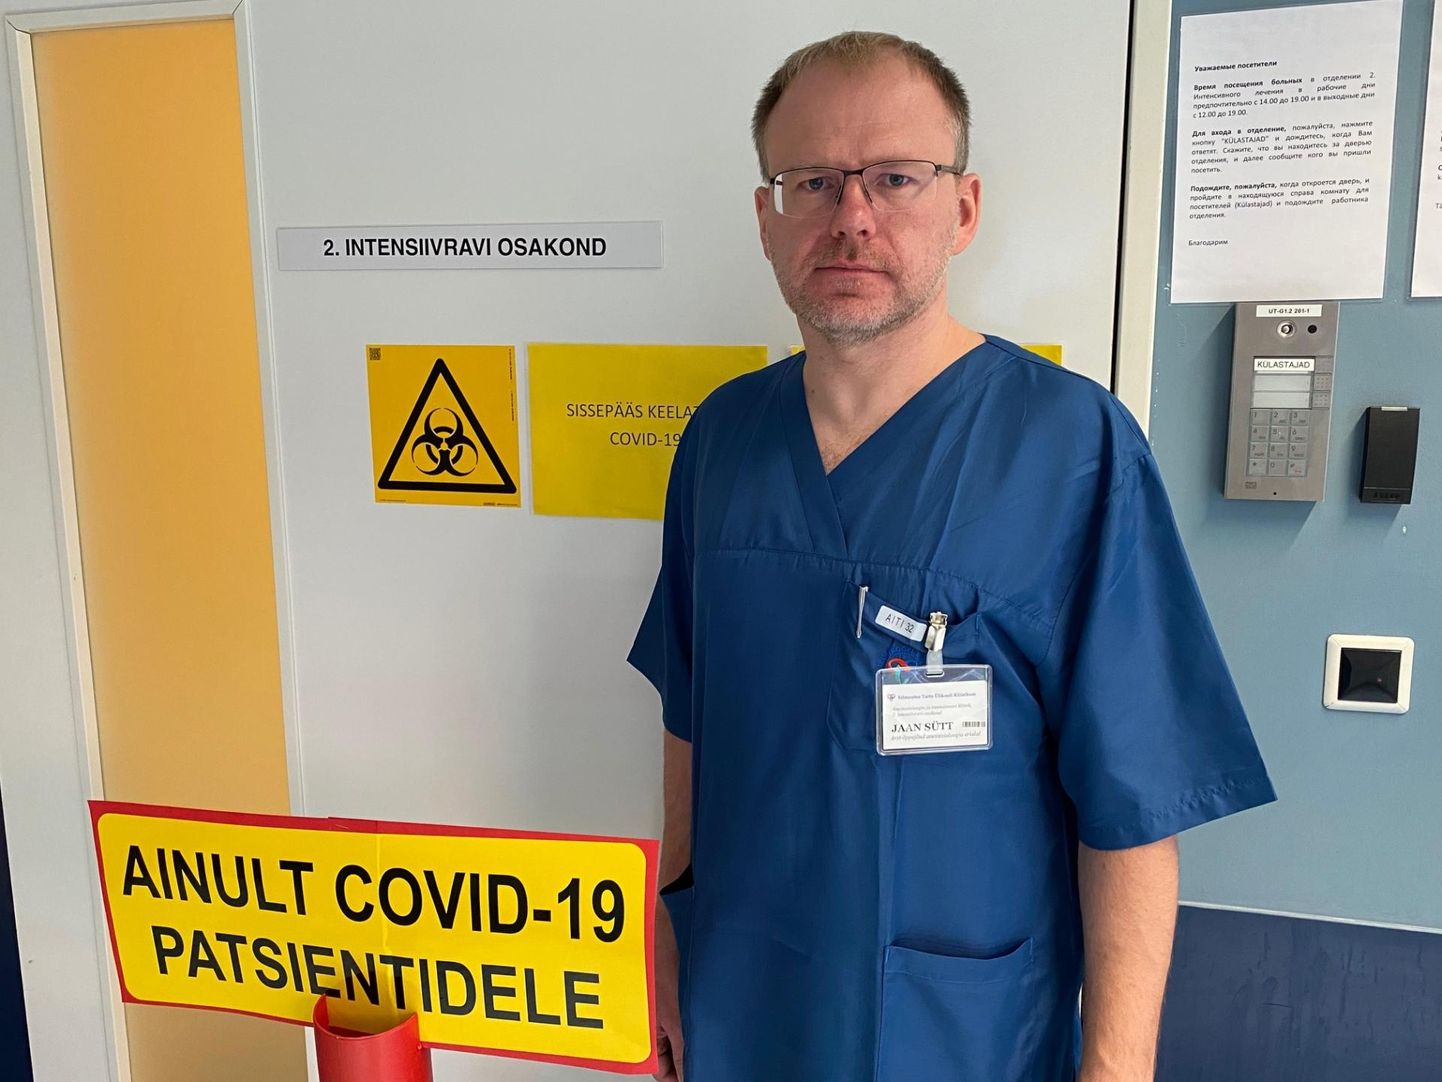 Стаж врача интенсивной терапии Яана Сютта - 15 лет. Он также работает анестезиологом и работал на скорой помощи. Сейчас он вдобавок ко всему исполняет обязанности президента Эстонского союза врачей.